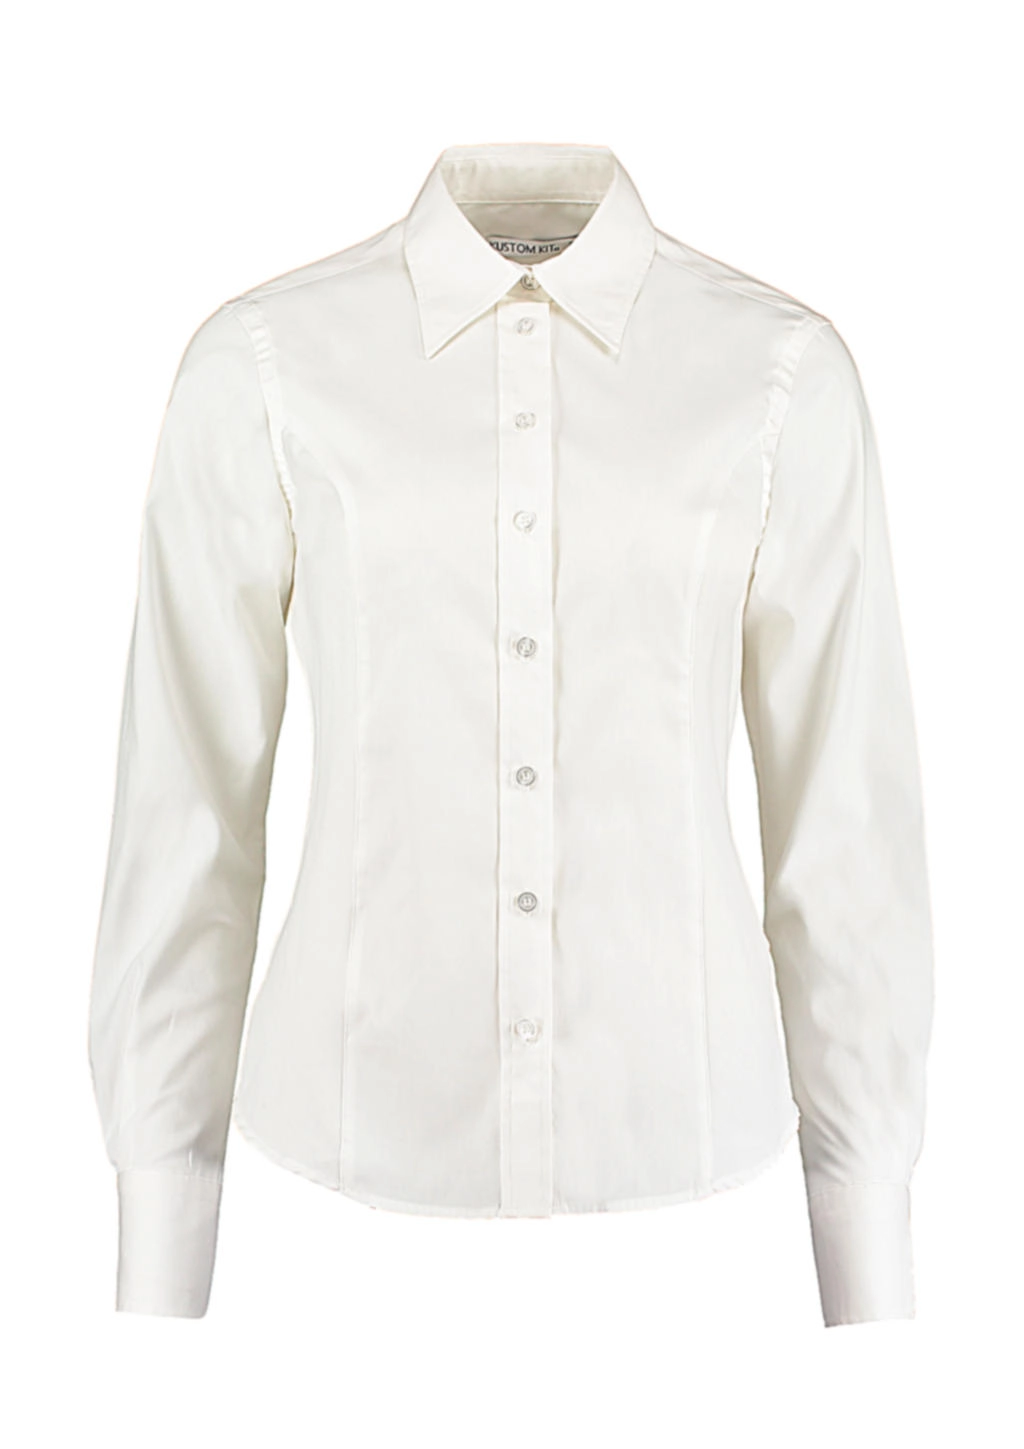 Women`s Tailored Fit Premium Oxford Shirt zum Besticken und Bedrucken in der Farbe White mit Ihren Logo, Schriftzug oder Motiv.